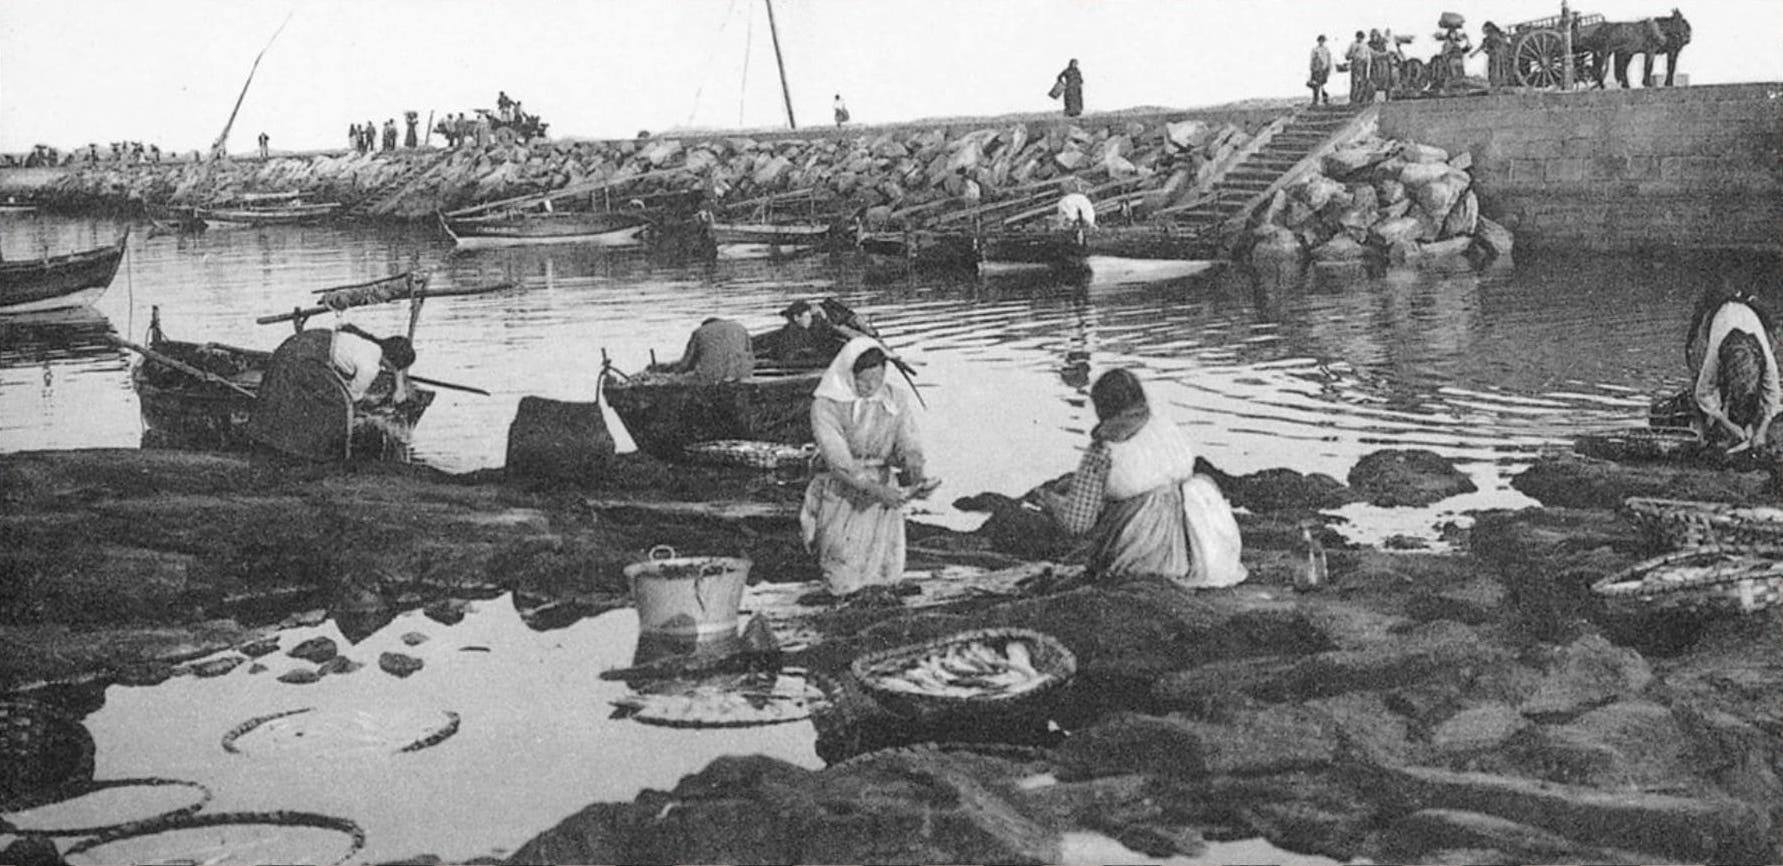 Imagen histórica de las costas gallegas, donde se puede observar a muchas mujeres trabajando de mariscadoras. Fuente: realconservera.com